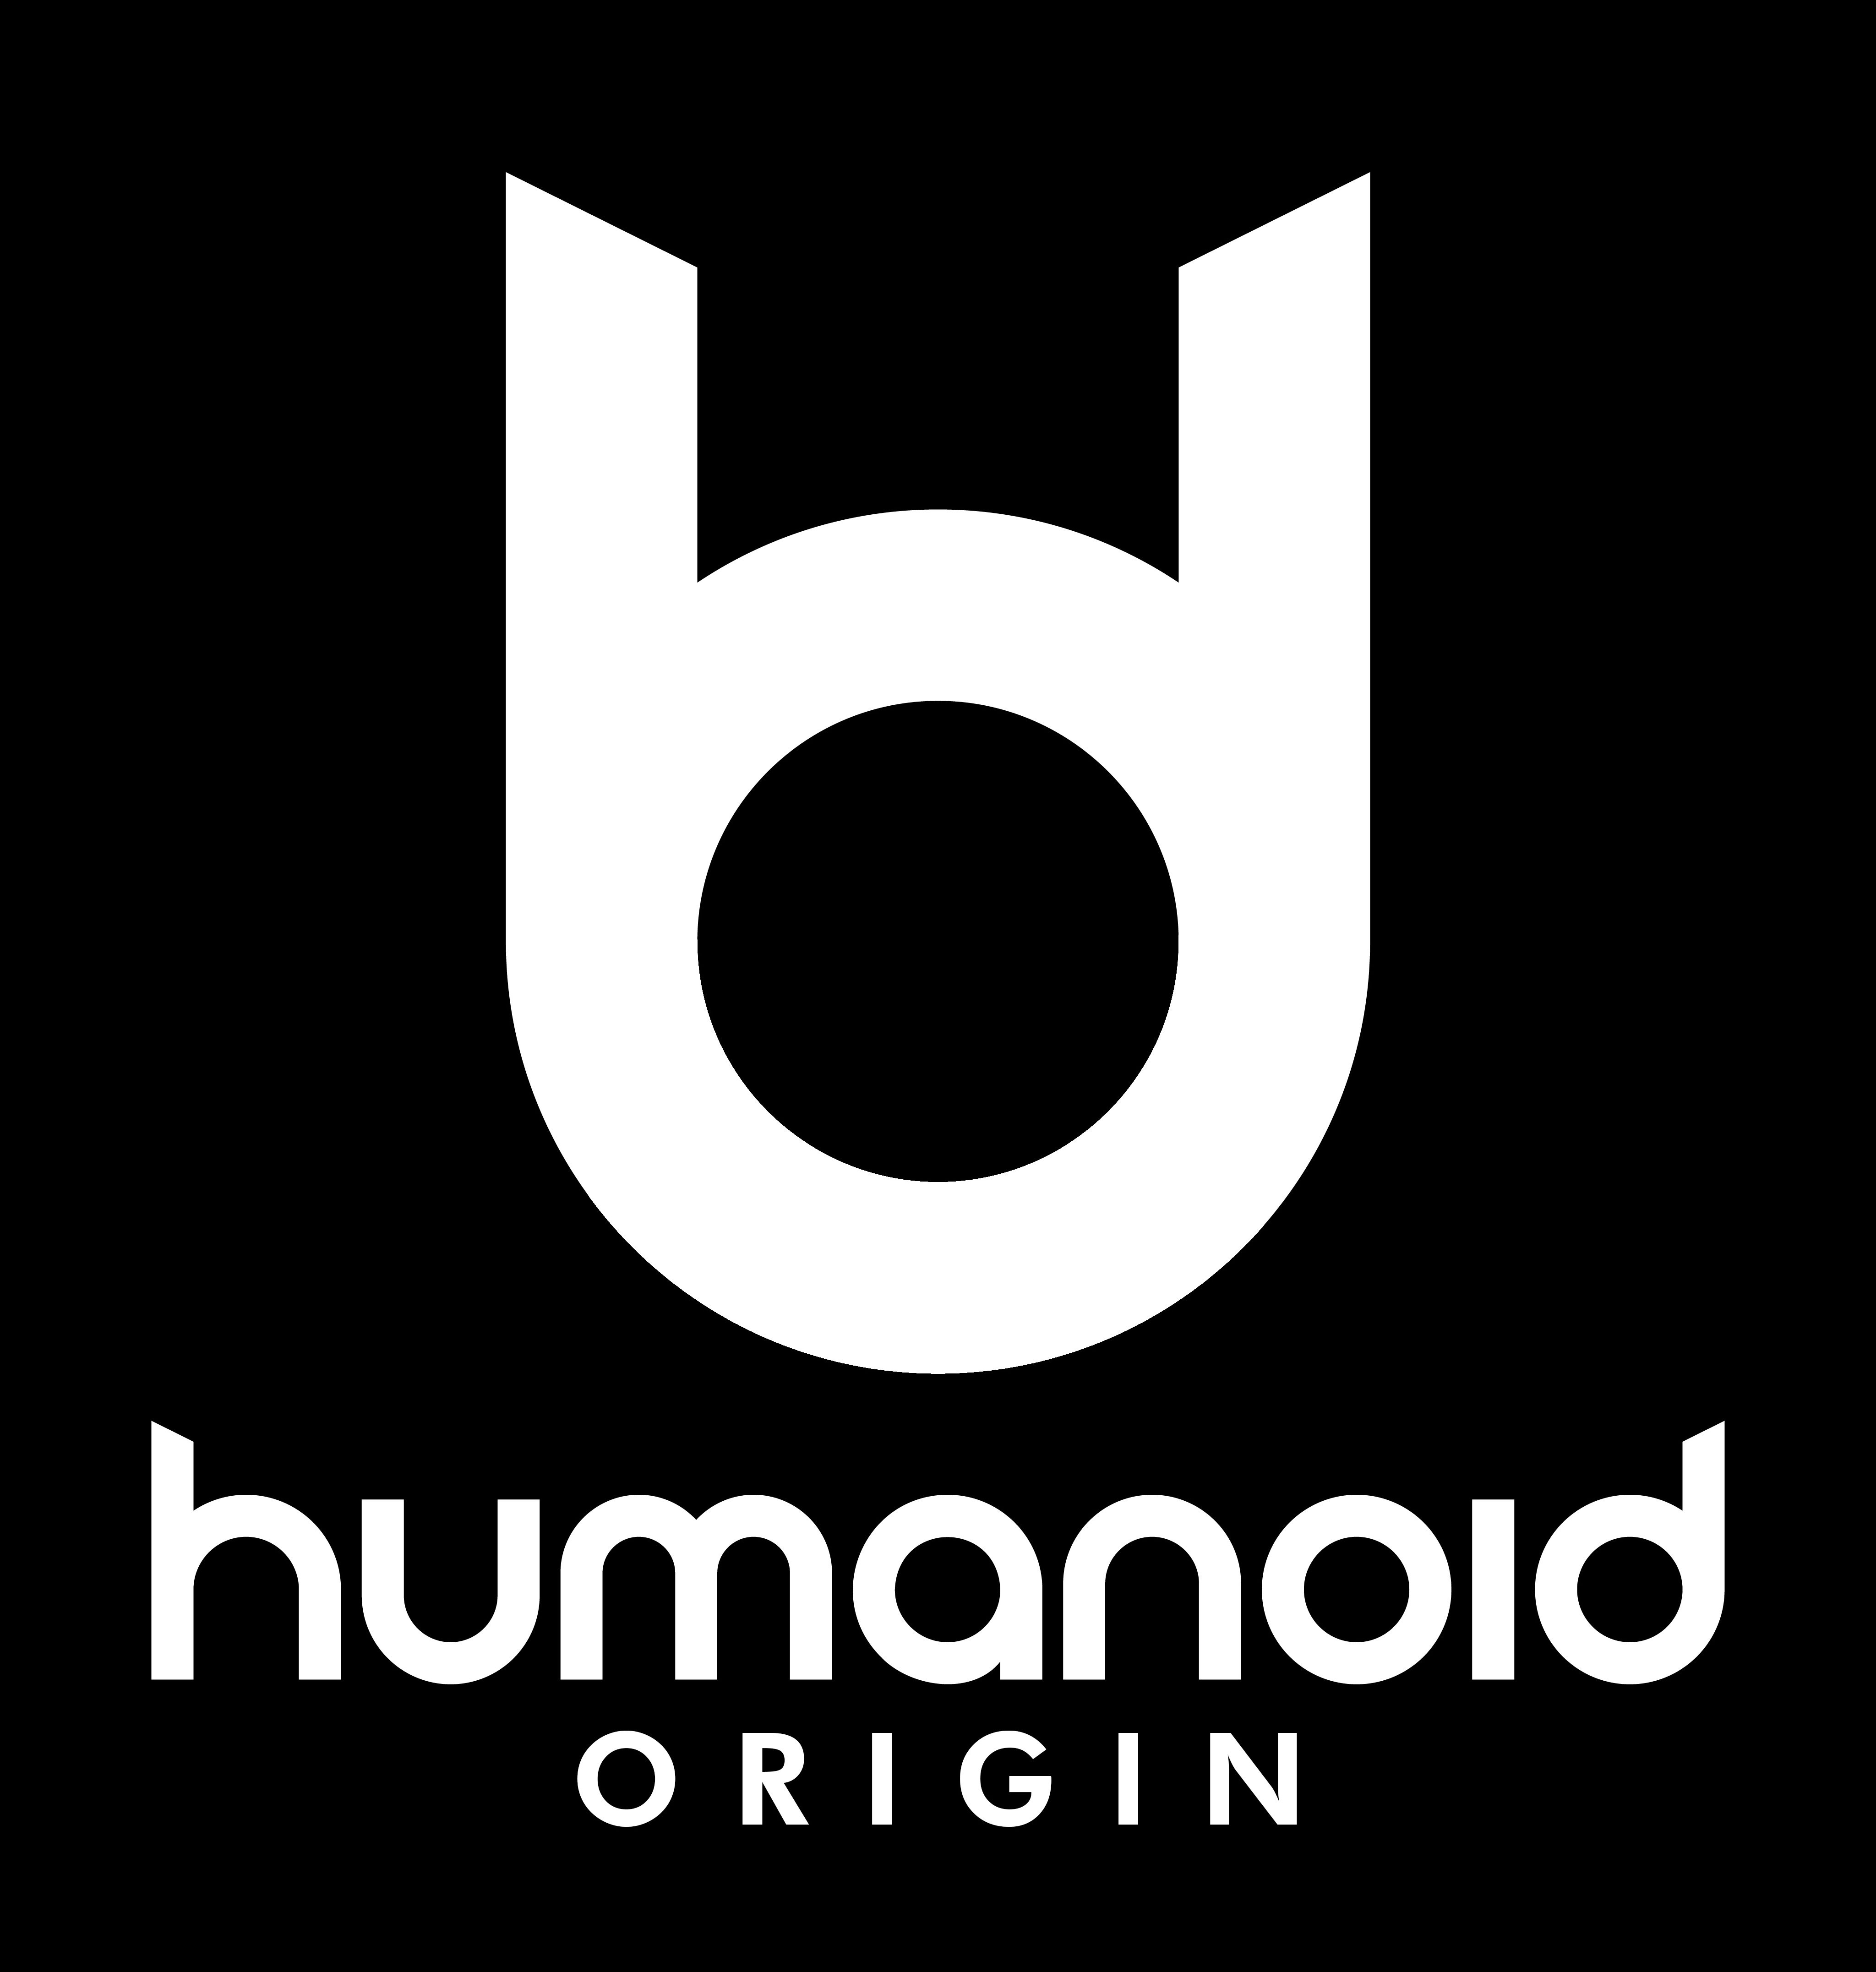  HUMANOID ORIGIN